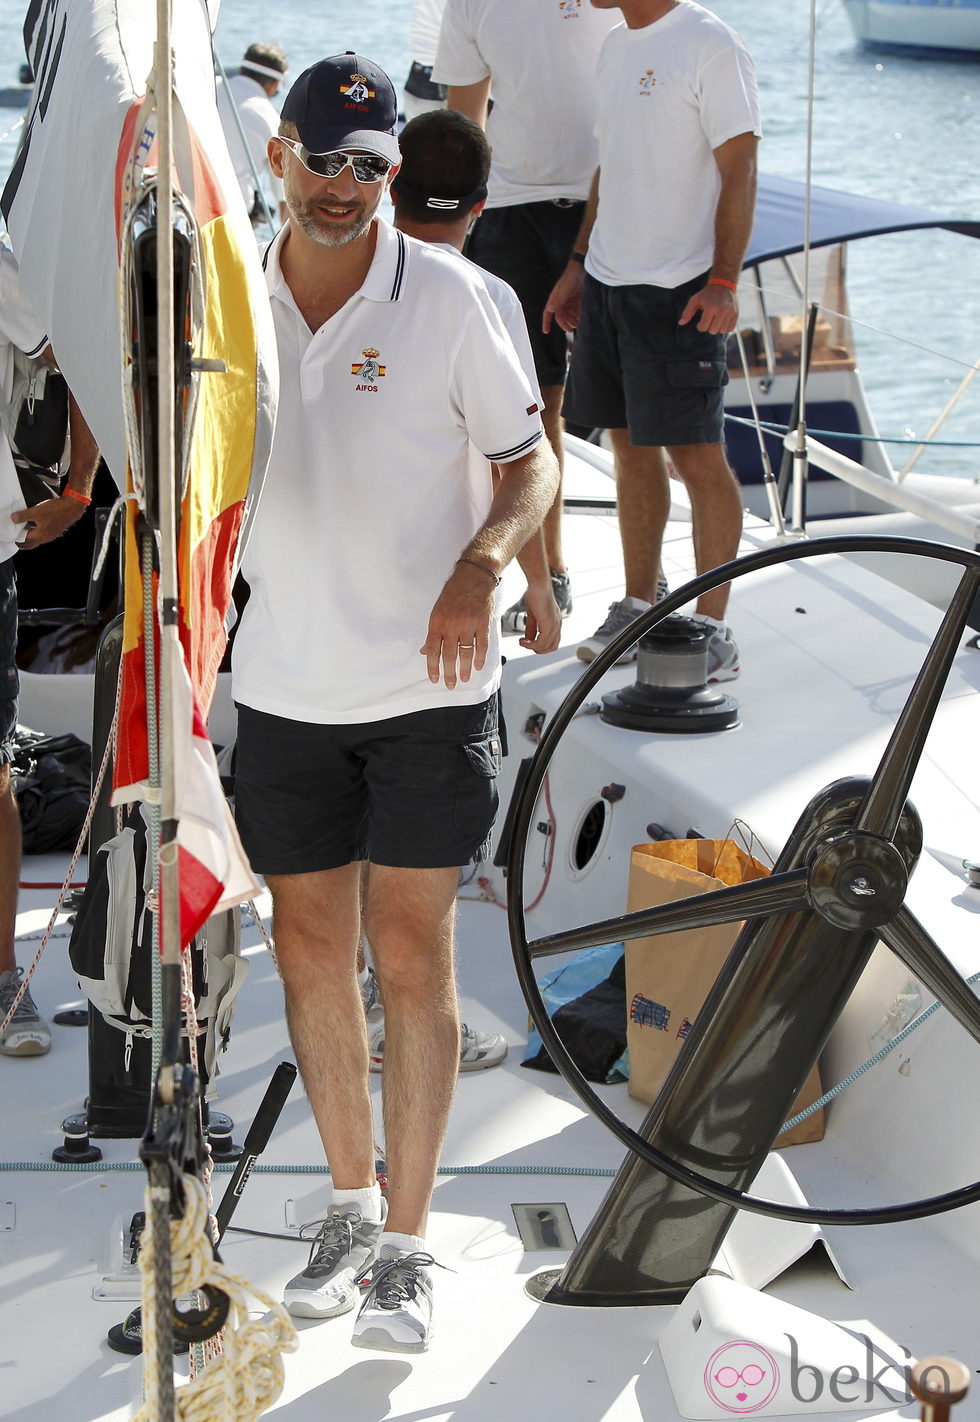 El Príncipe Felipe a bordo del Aifos en la Copa del Rey de Vela de Mallorca